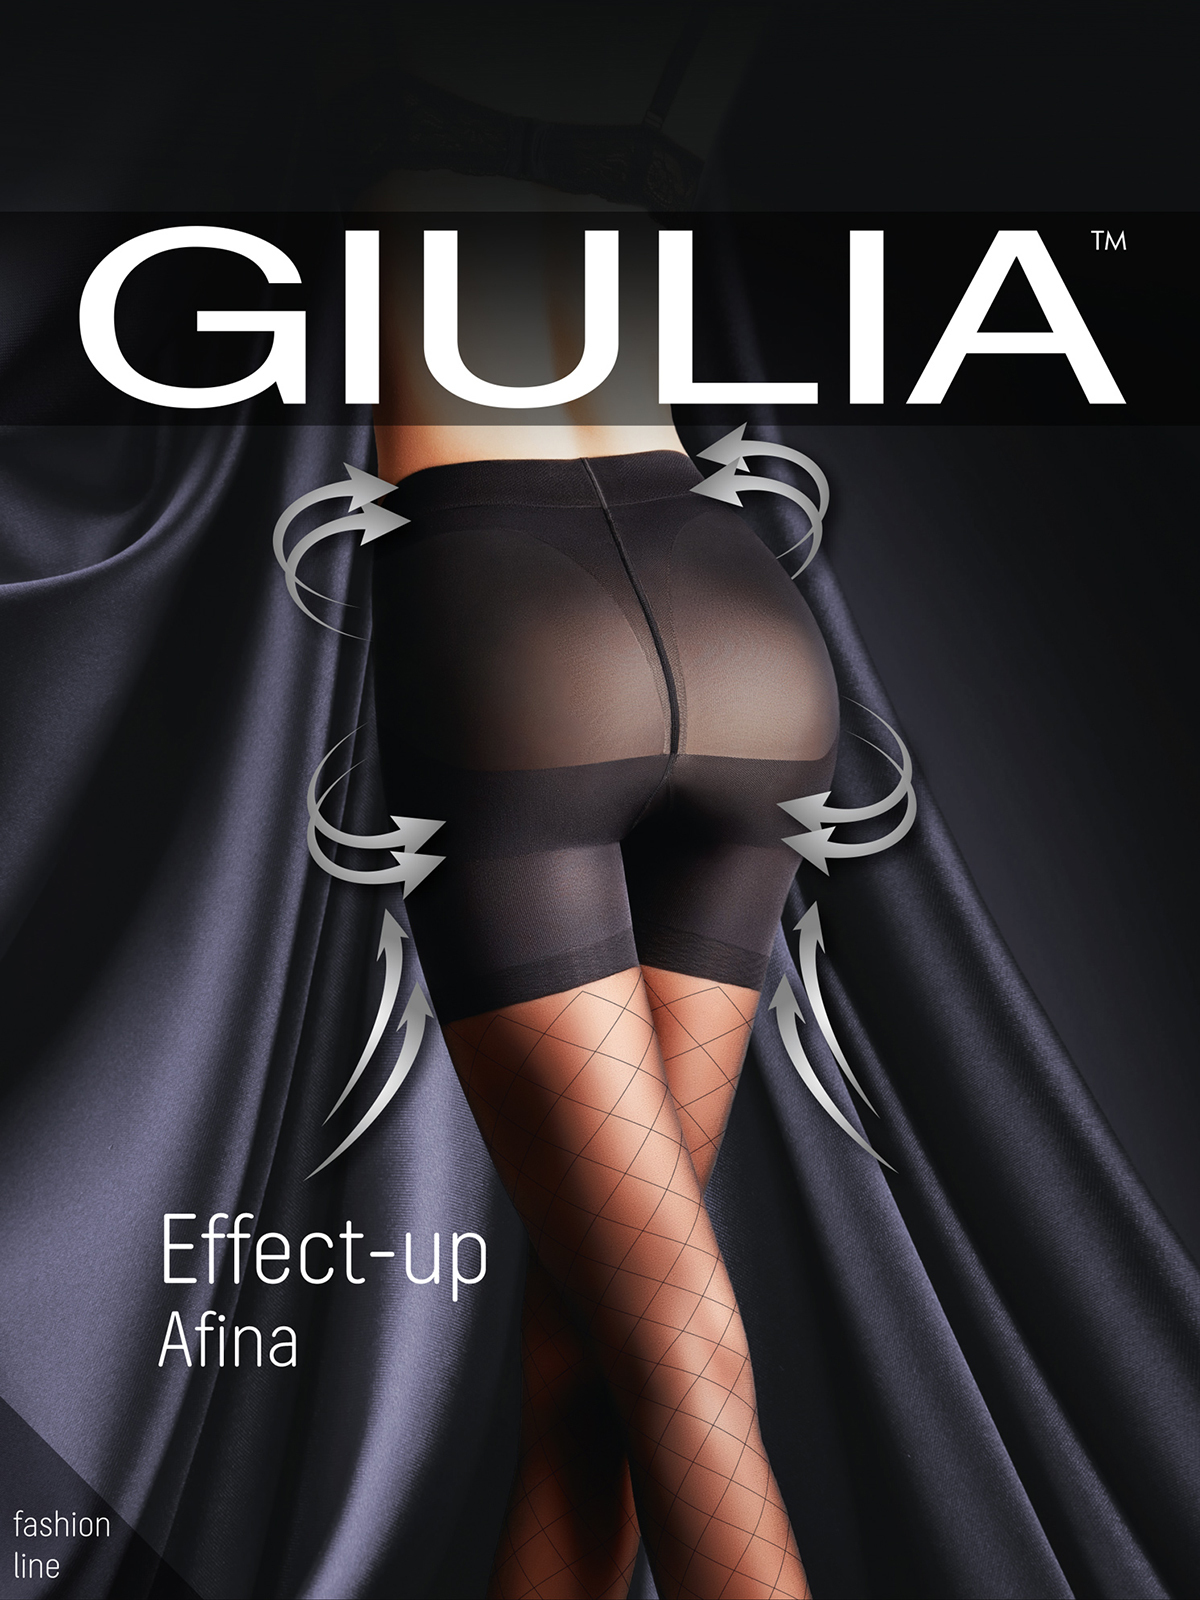 колготки GIULIA EFFECT UP Afina 40 01